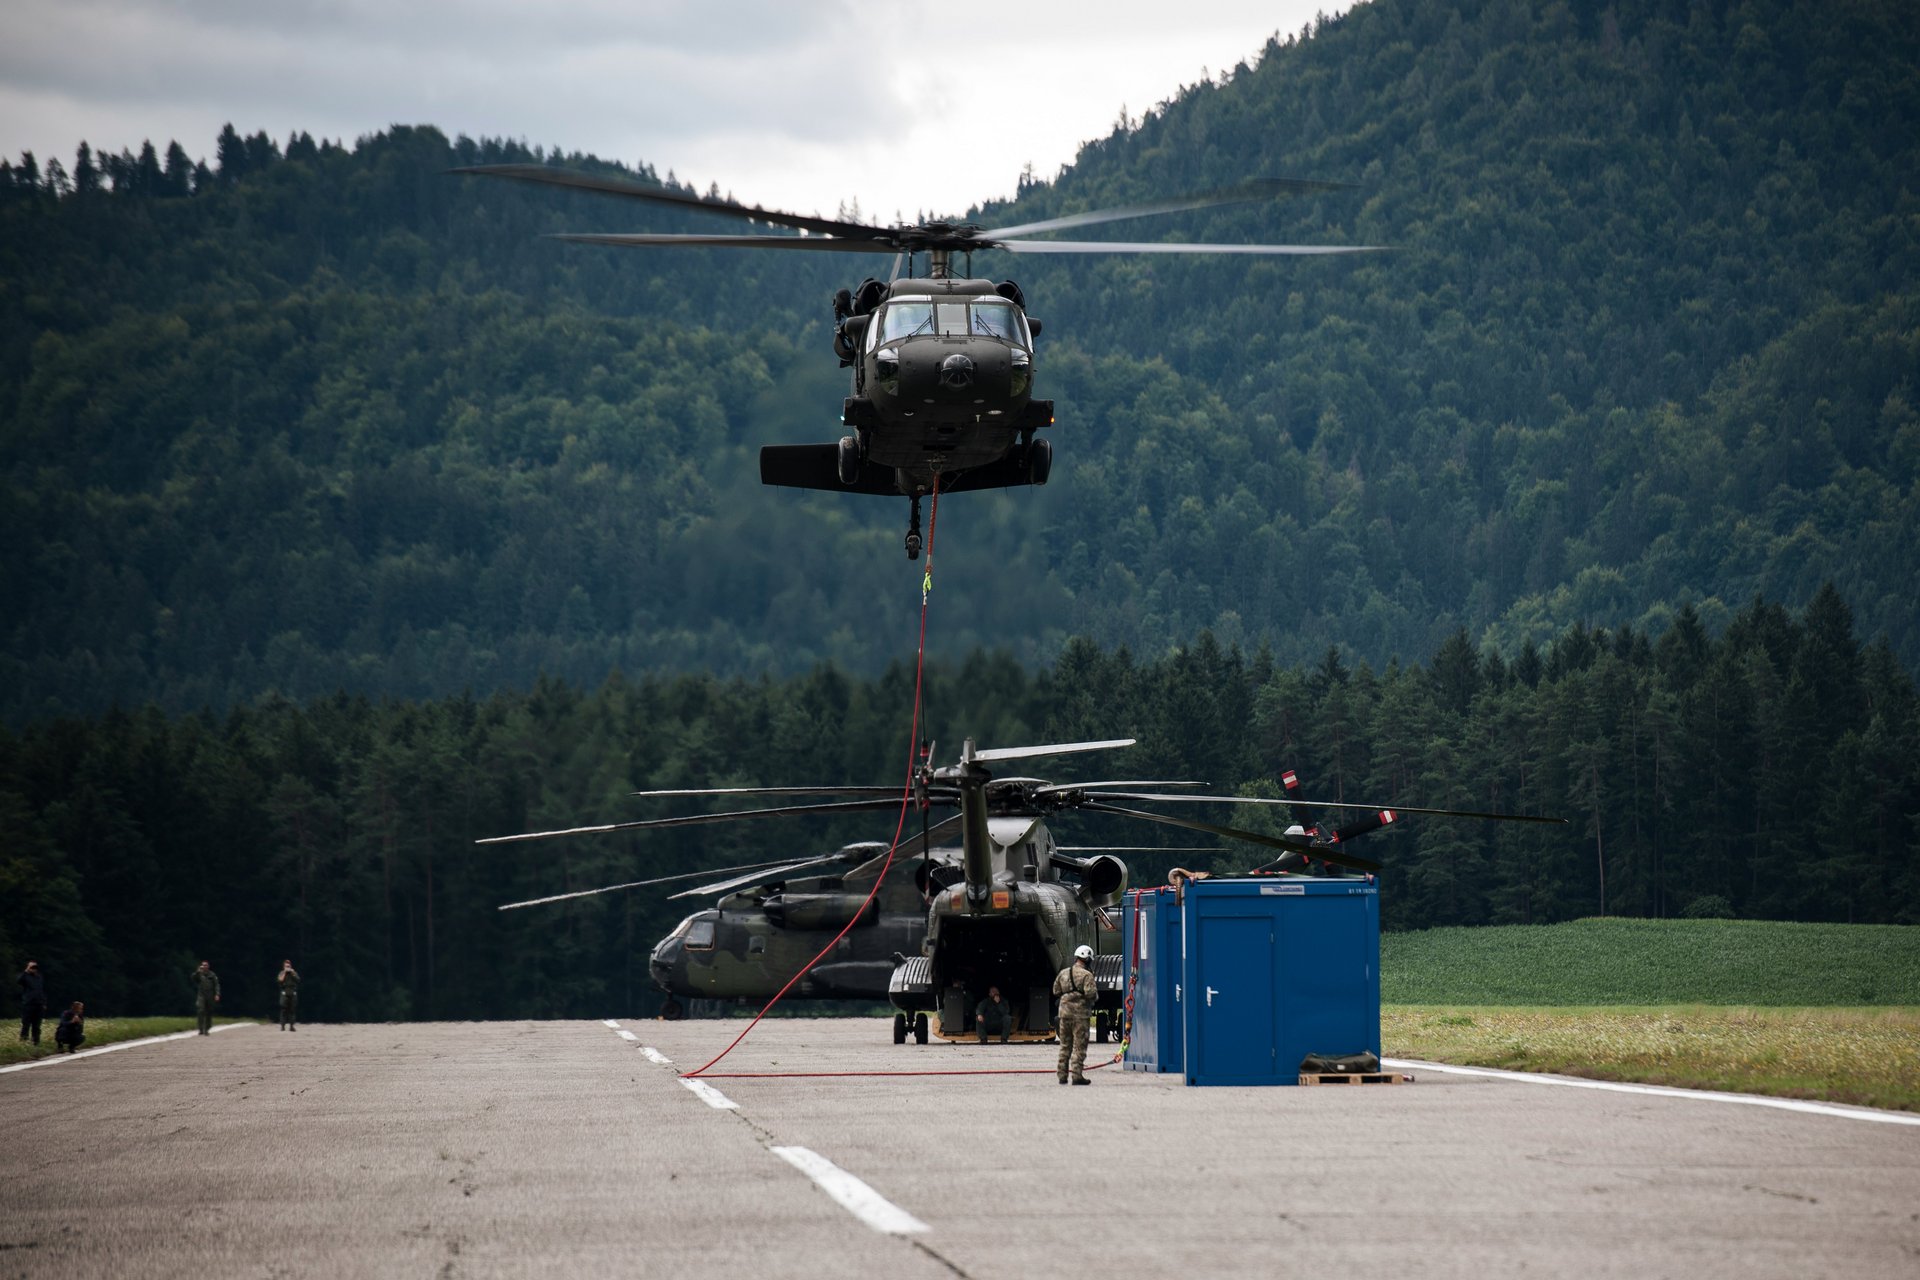 Ein S-70 "Black Hawk" im Katastrophenhilfe-Einsatz in Slowenien.